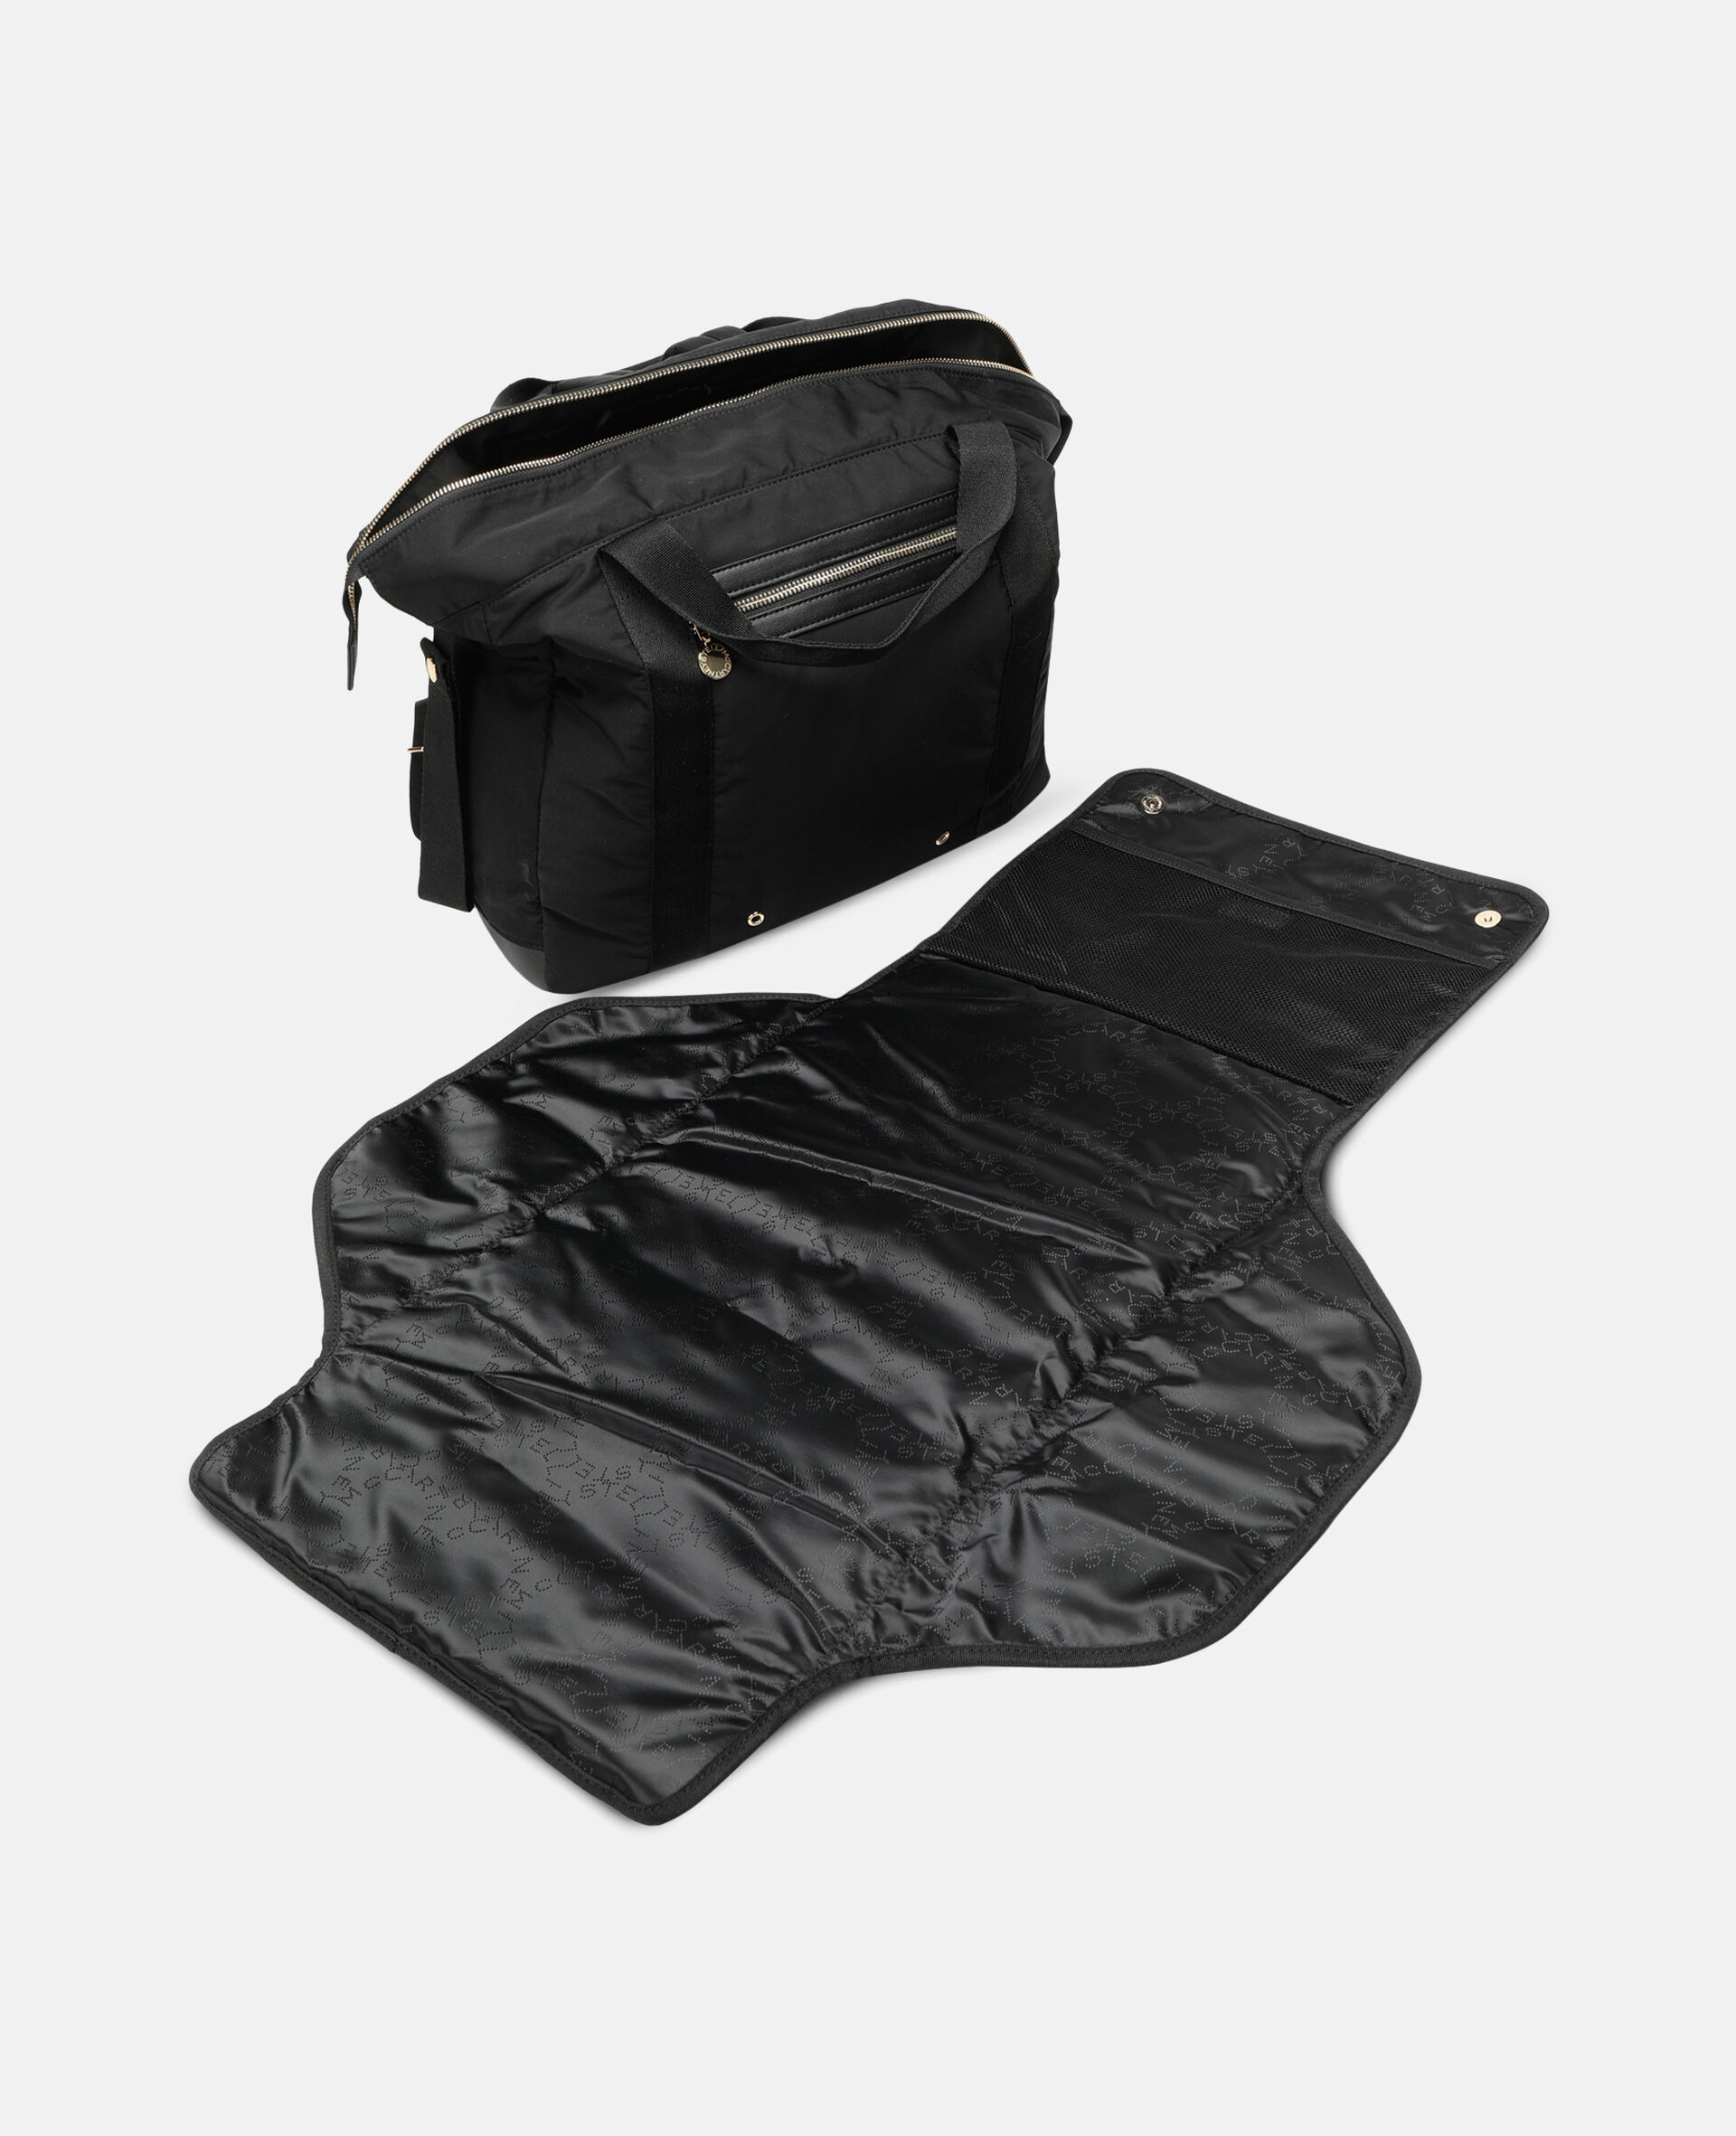 Diaper Backpack-Black-large image number 2